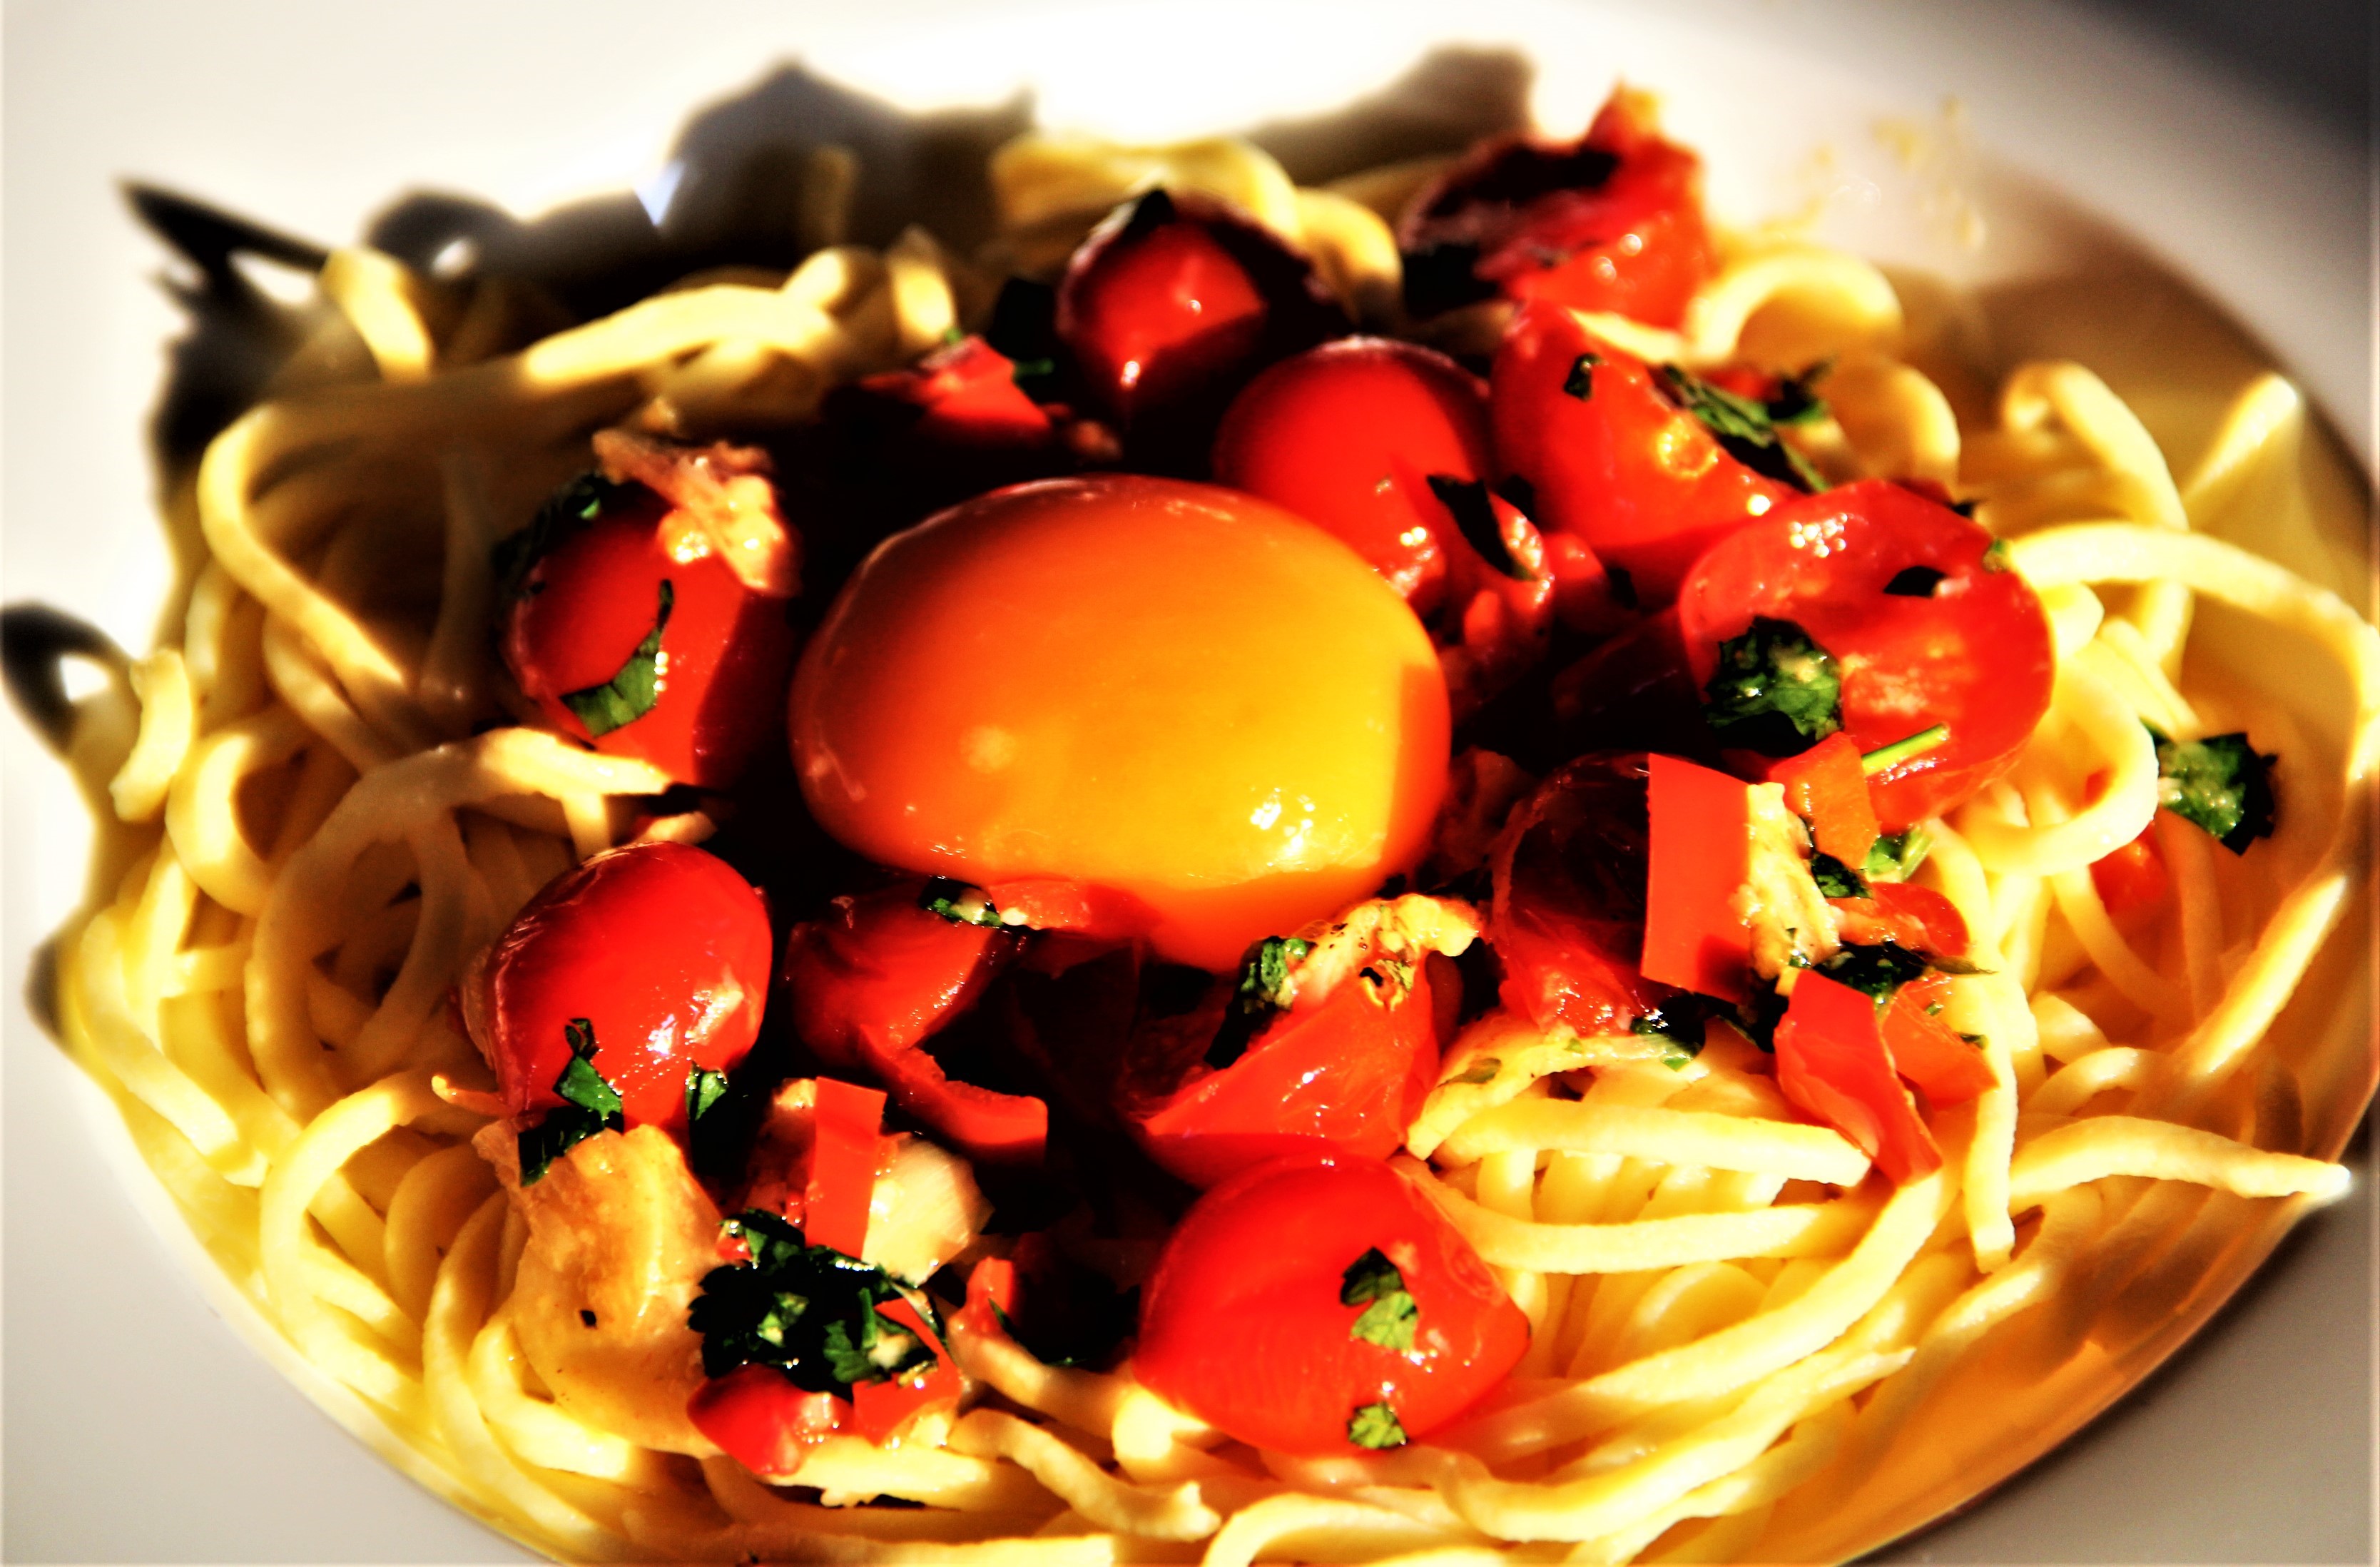  Spaghetti alio, olio e peperoncino da Donato aus Ansbach